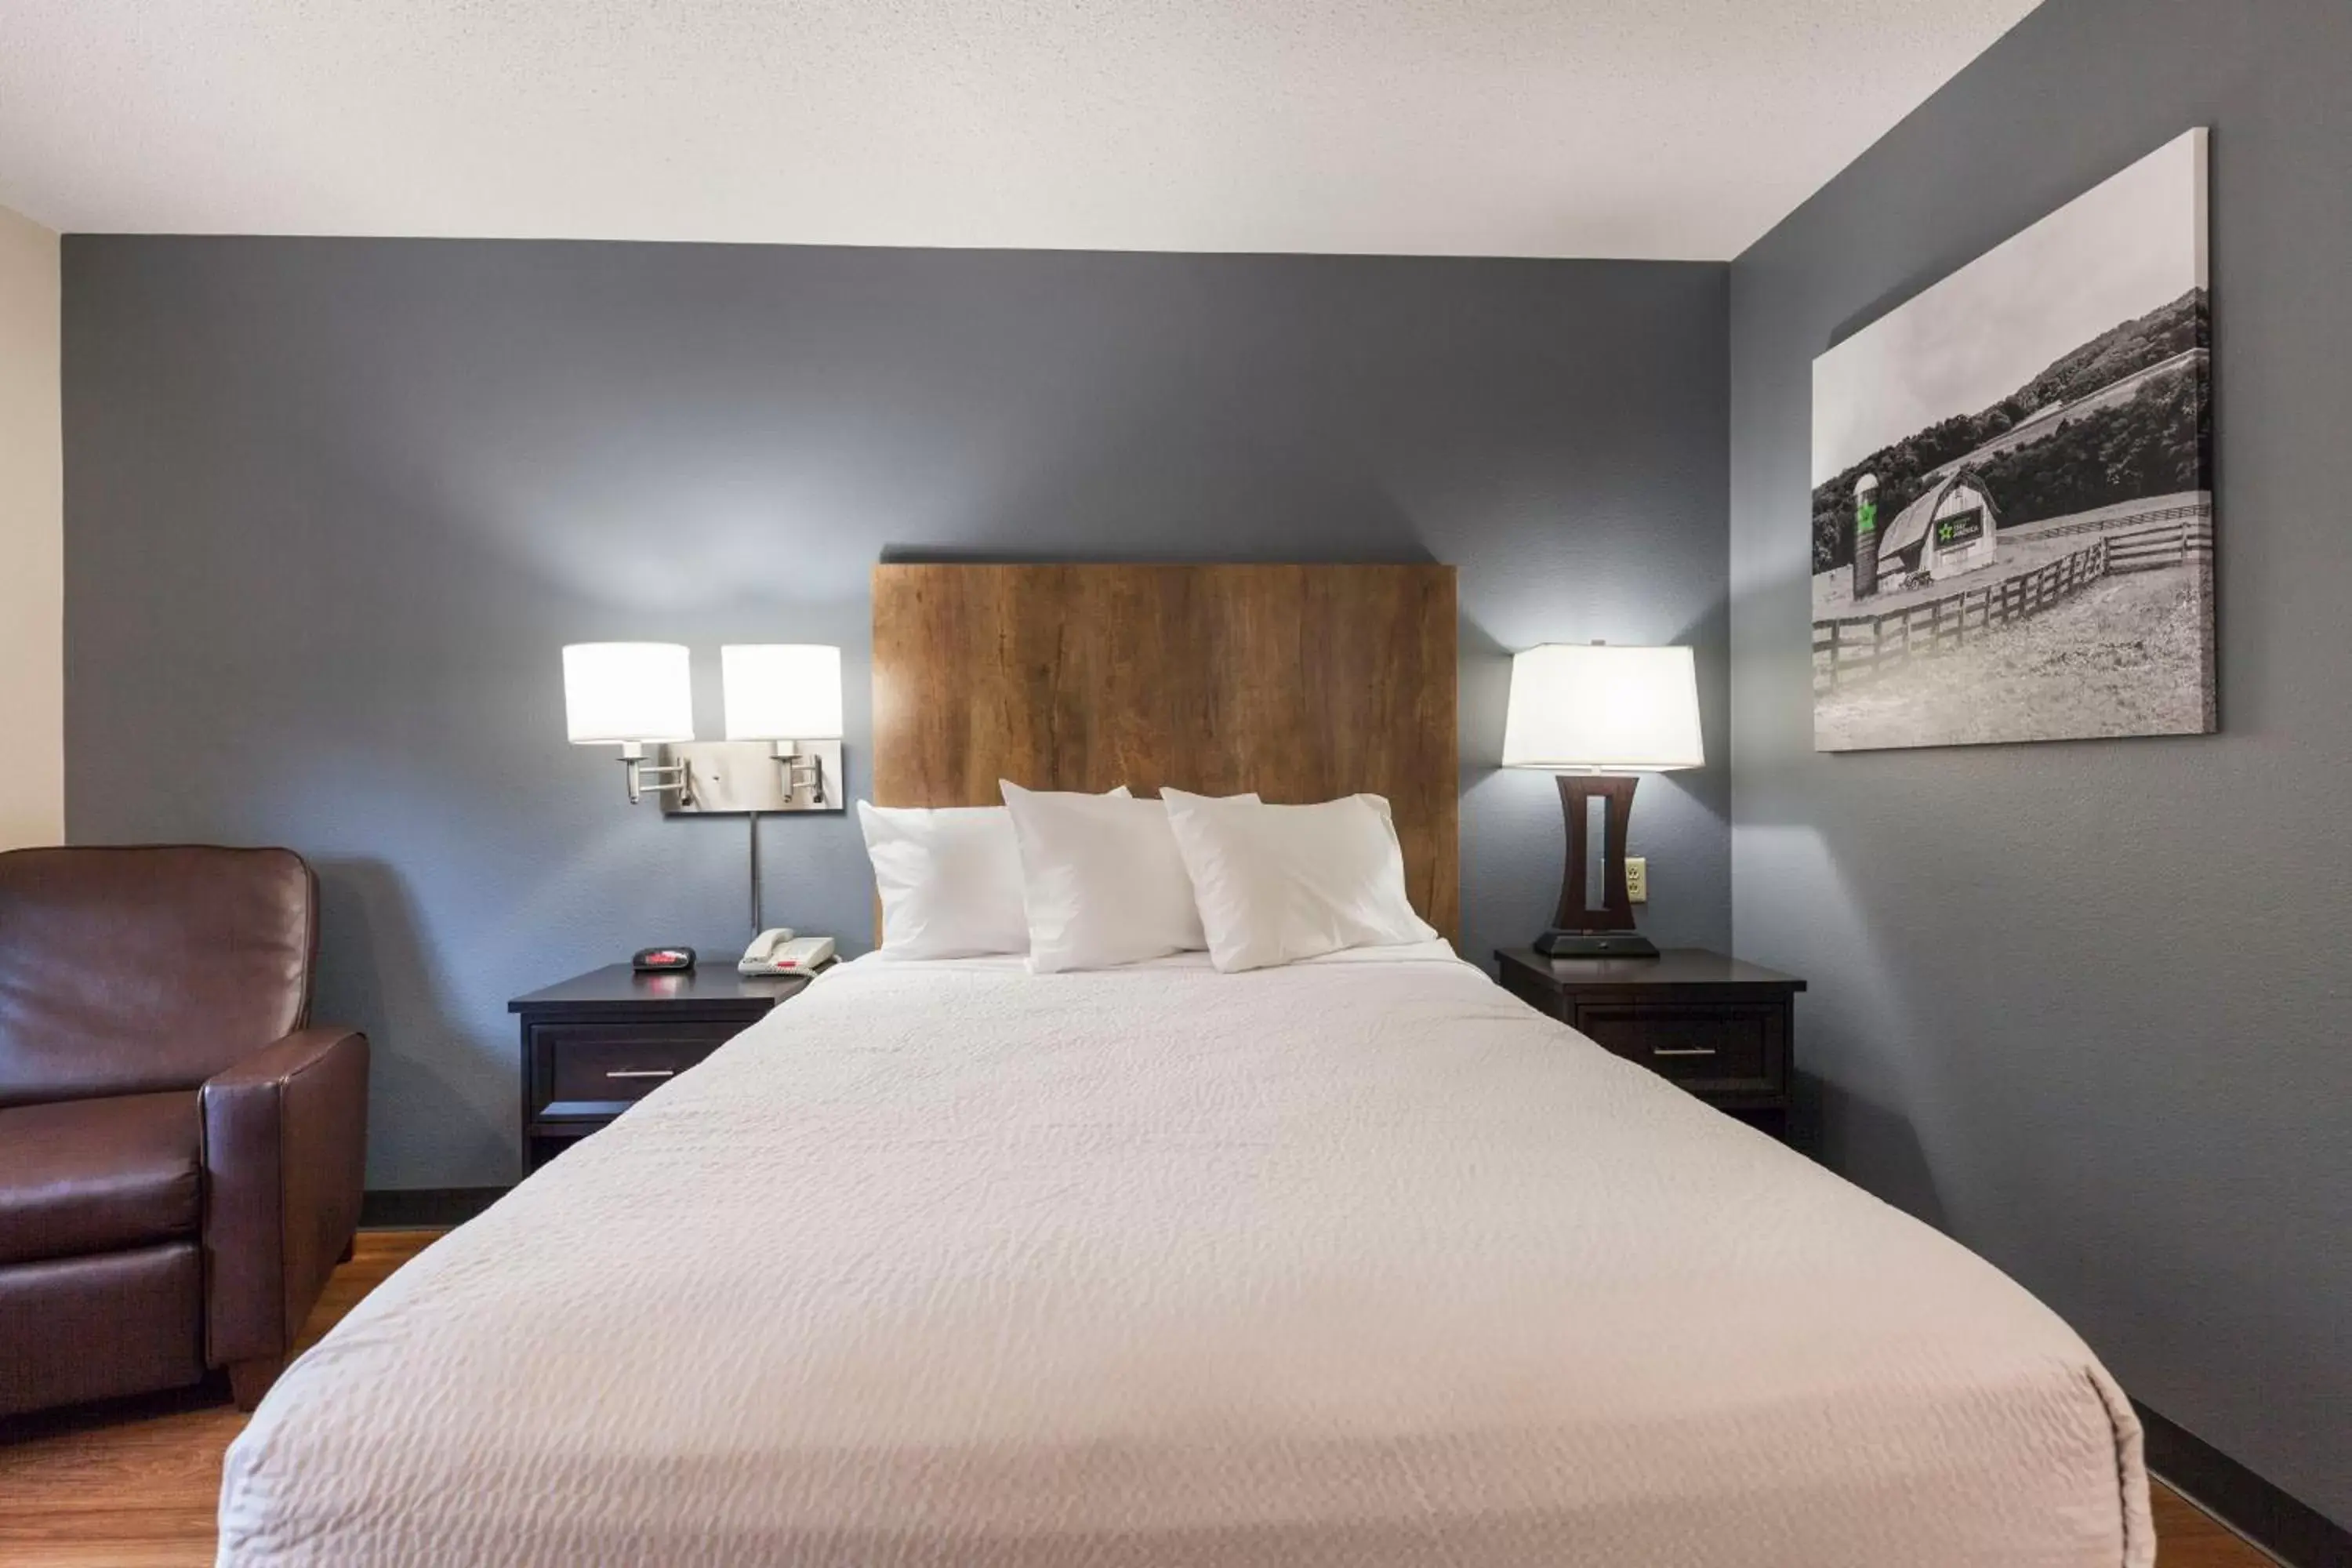 Bed in Extended Stay America Premier Suites - Fort Lauderdale - Deerfield Beach